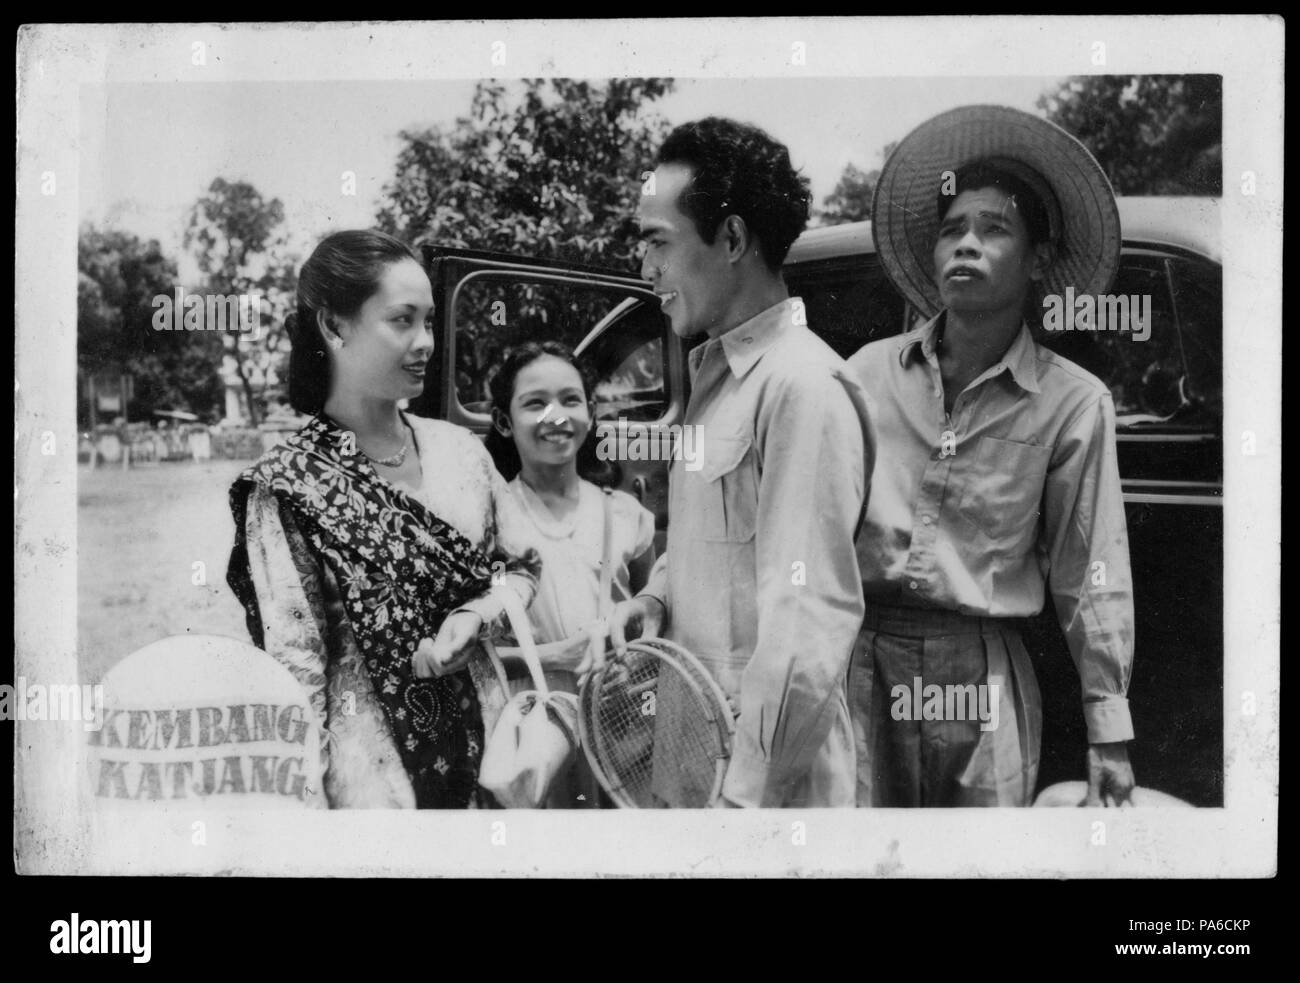 207 Promotional Still for Kembang Katjang (1950) Stock Photo